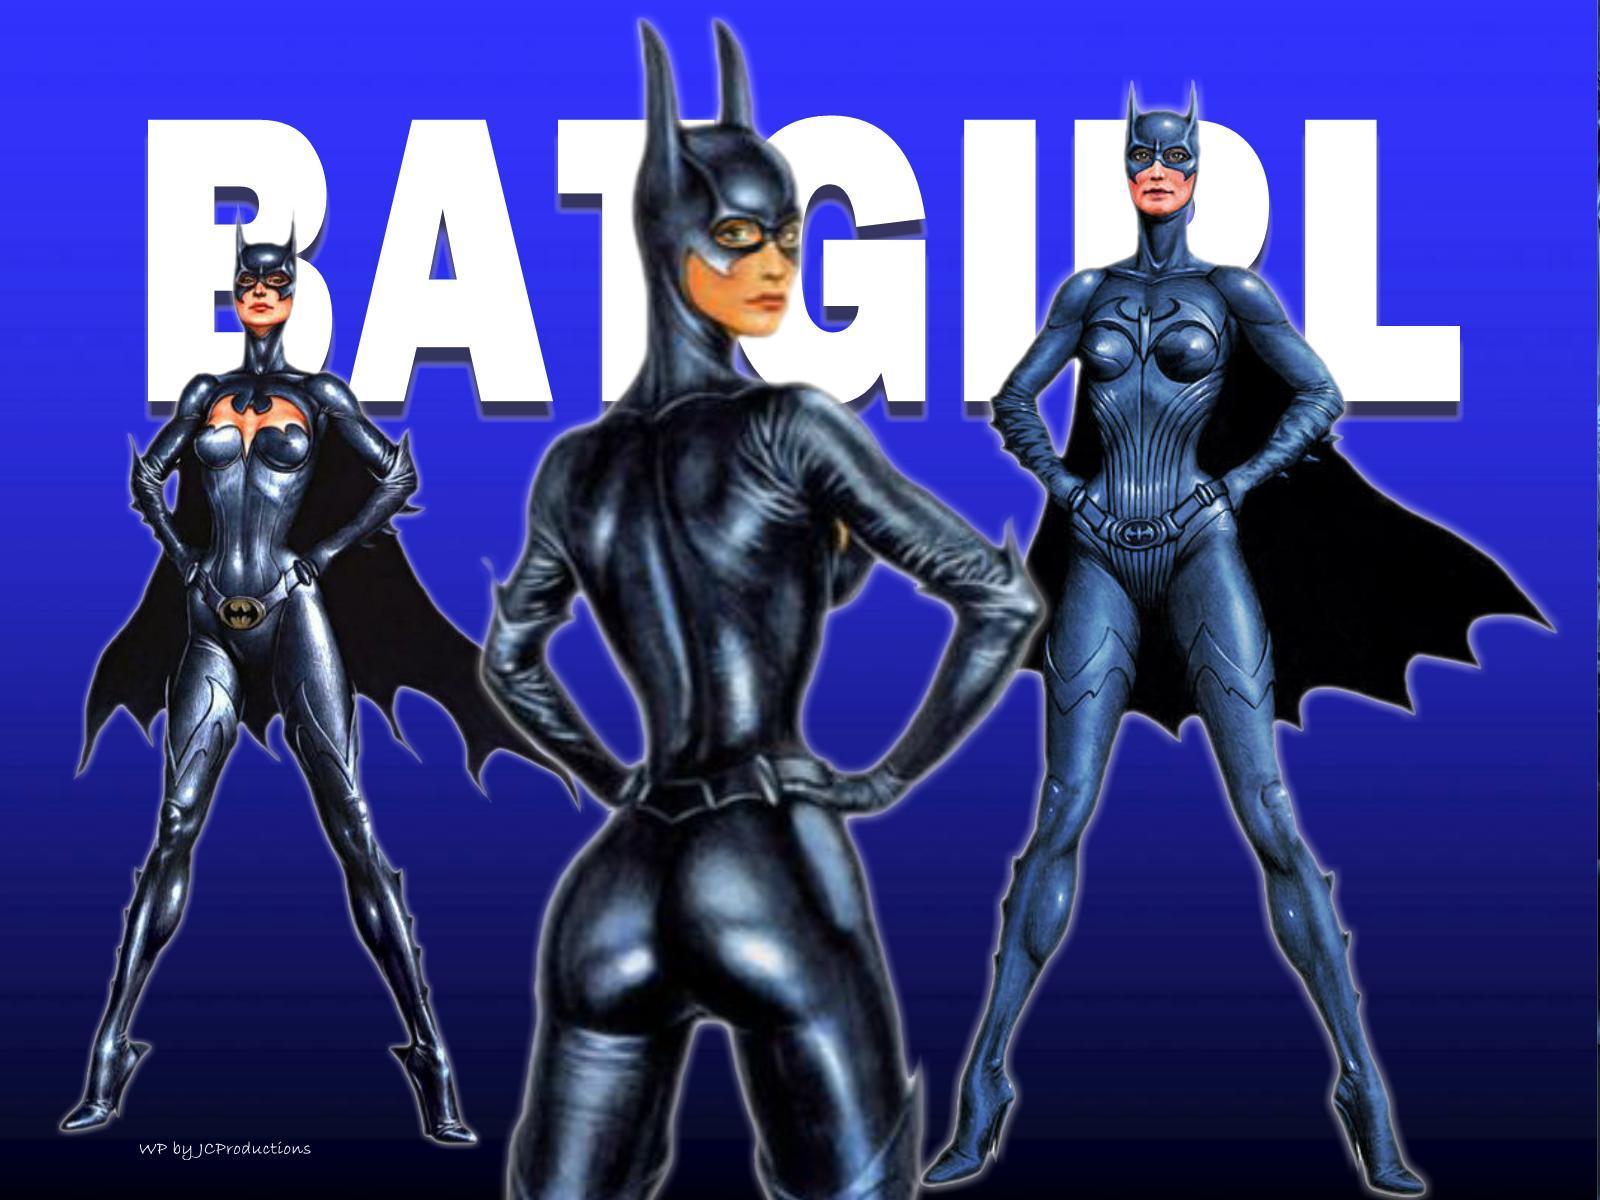 DC Comics images Batgirl wallpaper photos 16138485 1600x1200